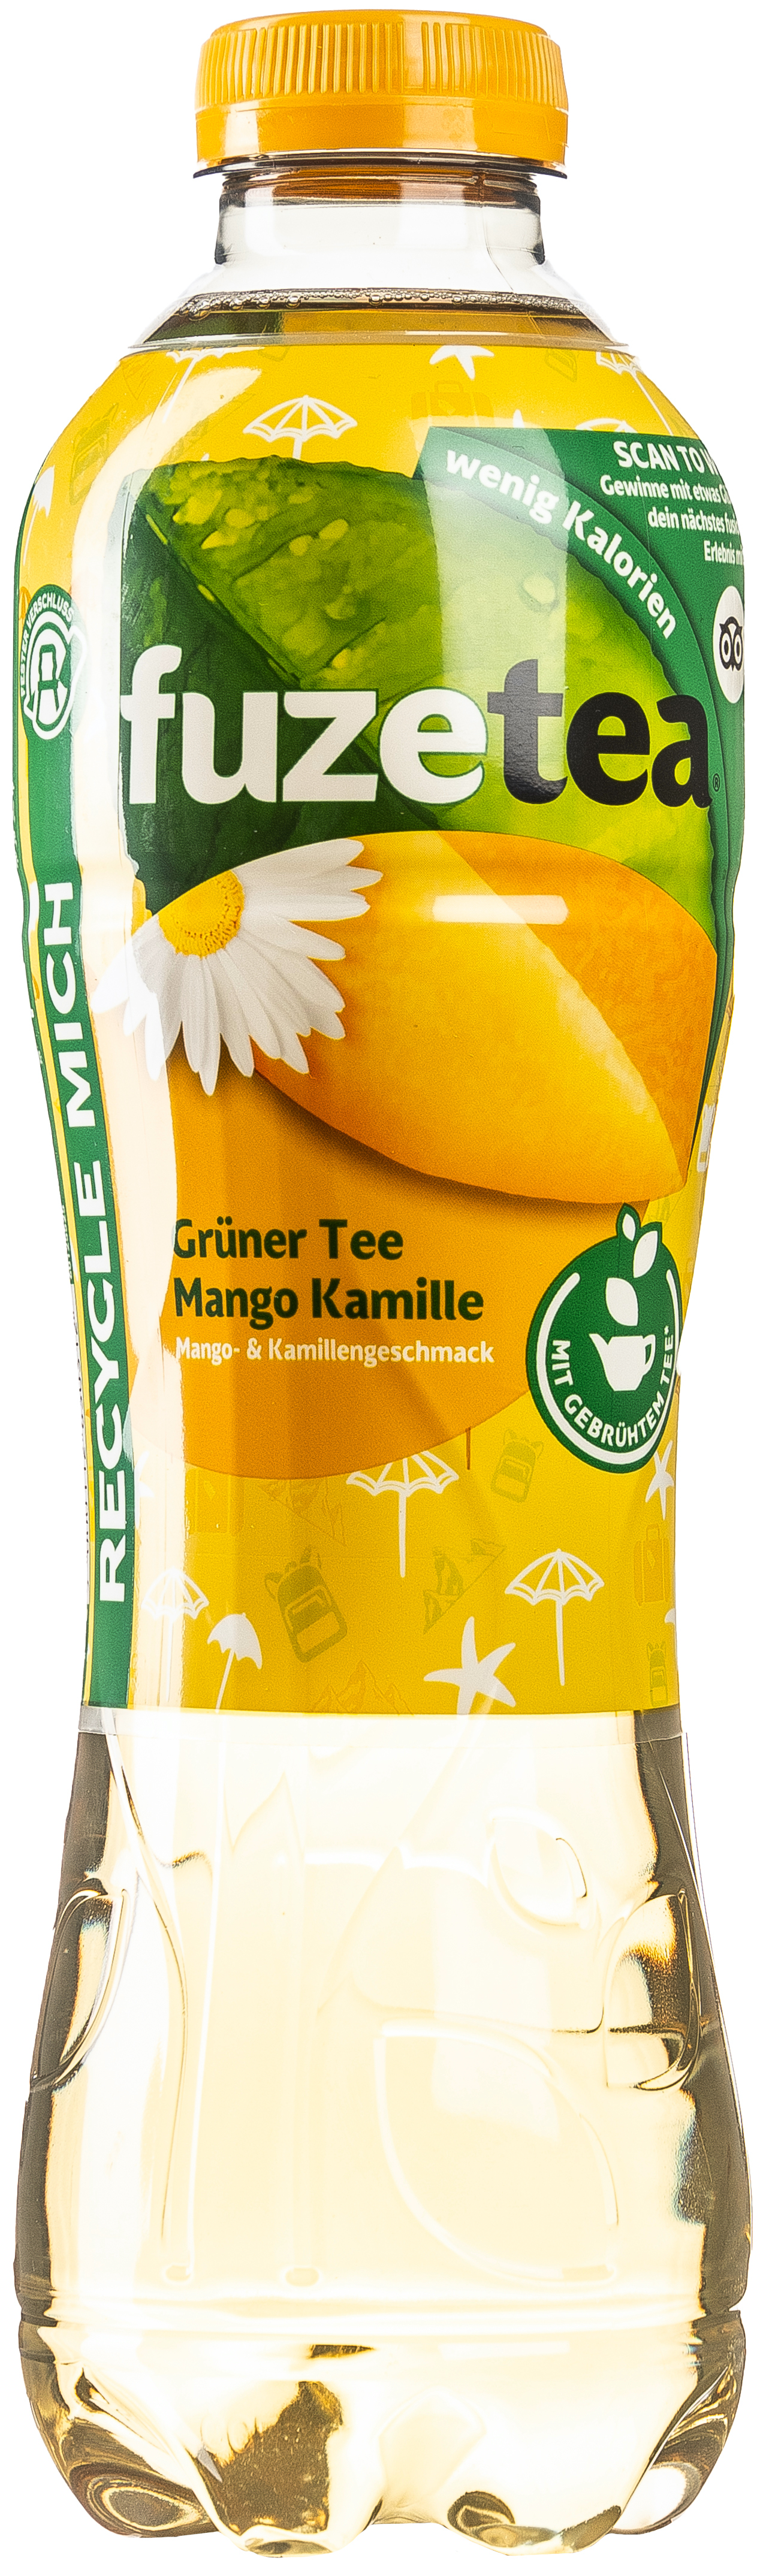 Fuze Tea Mango Kamille 1,0L EINWEG